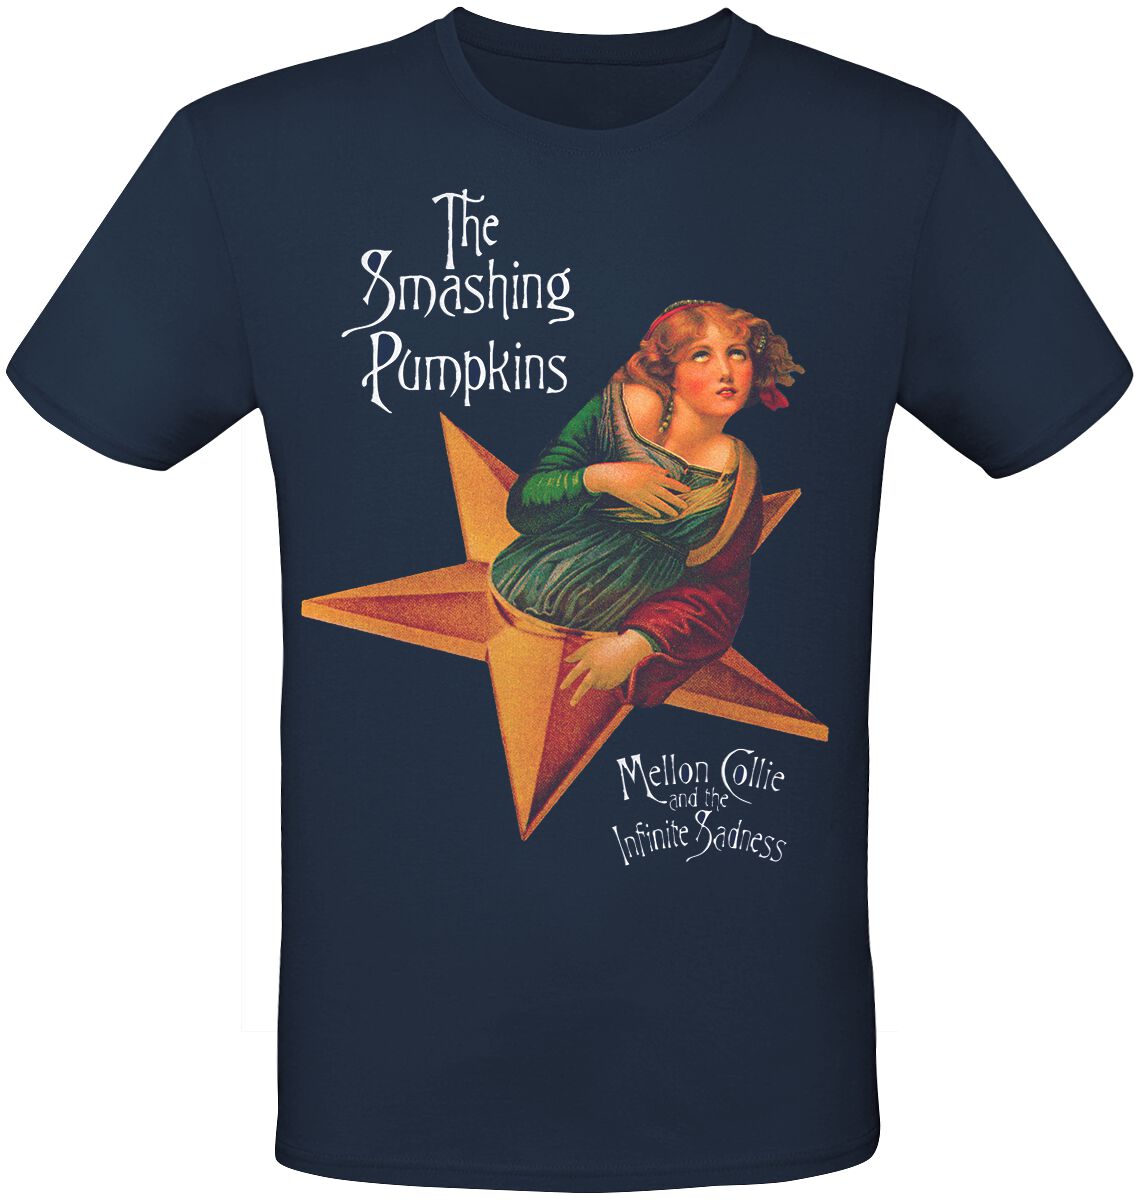 Smashing Pumpkins T-Shirt - MCATIS Album - S bis 3XL - für Männer - Größe M - navy  - Lizenziertes Merchandise!